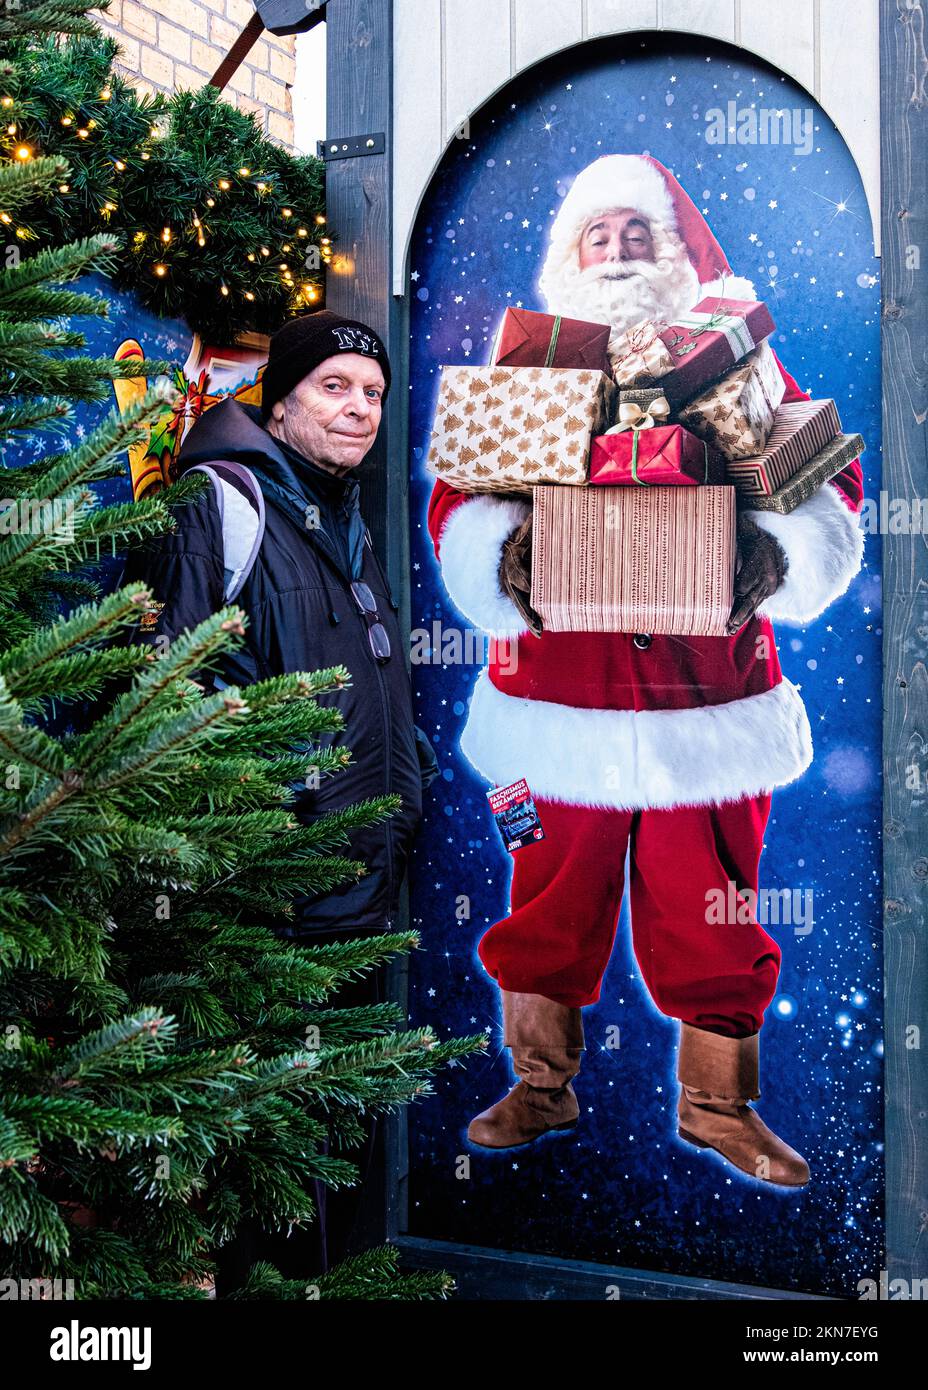 Winterzauber, mercado de Navidad Winter Magic, el mercado más antiguo de Berlín Oriental, Frankfurter Allee 196, Lichtenberg, Berlín. Parque de atracciones y parque de atracciones Foto de stock